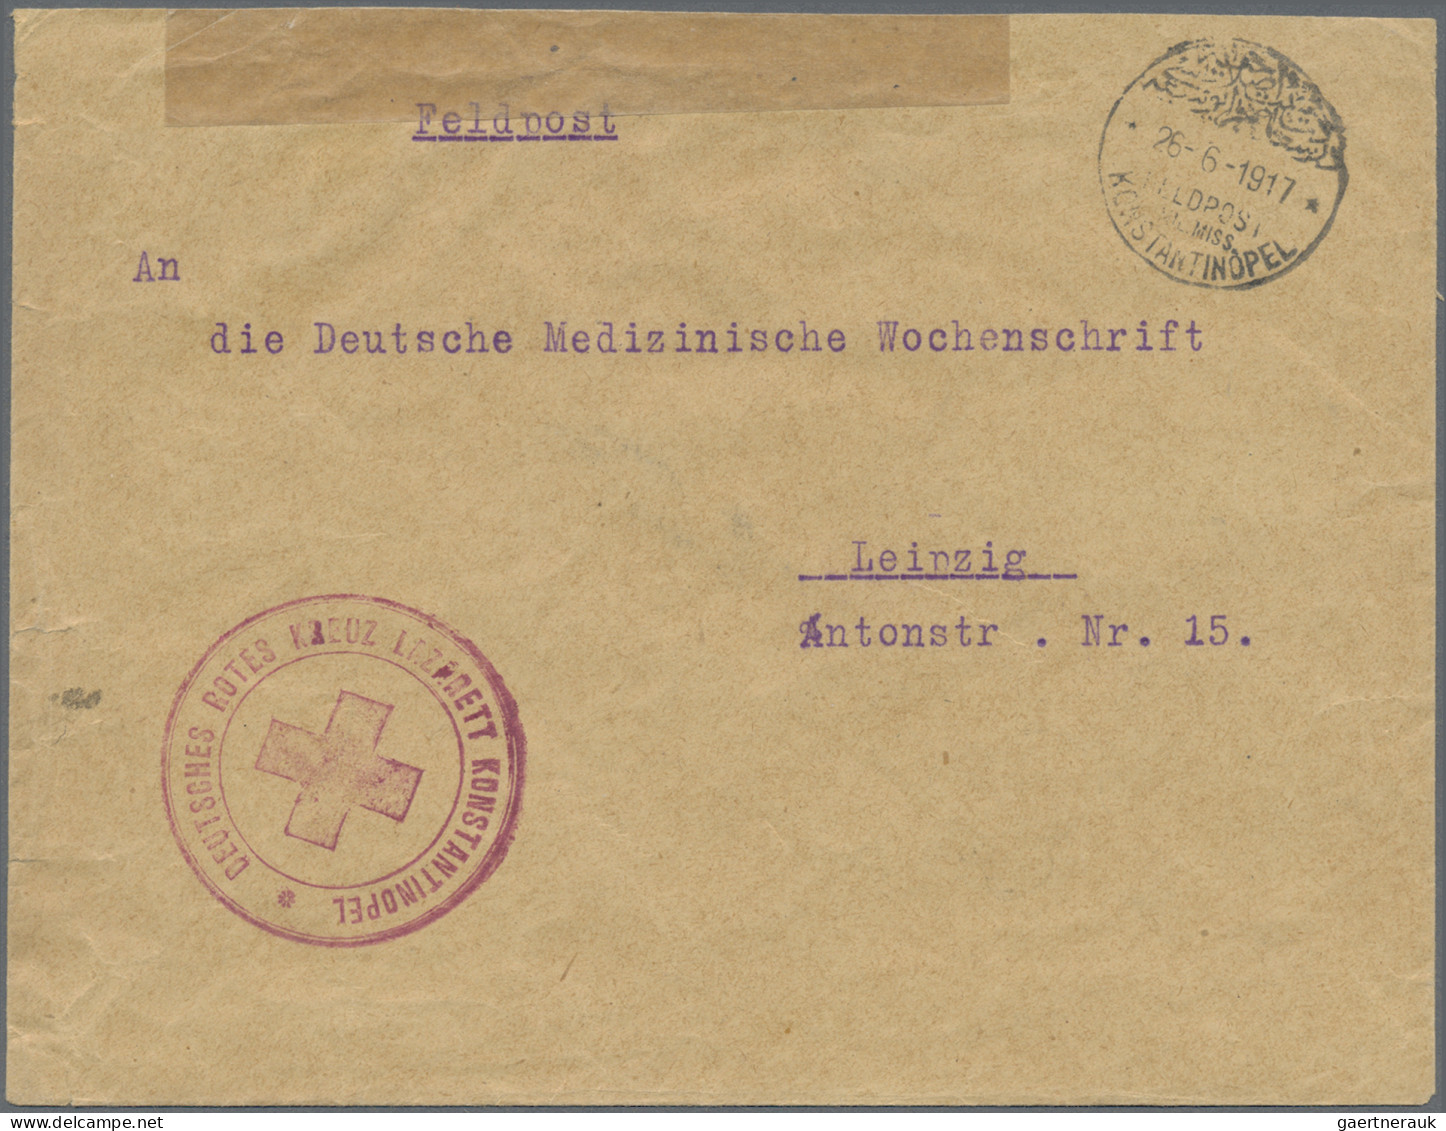 Militärmission: 1917/18, MIL.MISS.KONSTANTINOPEL Auf Zwei FP-Belegen Mit Roten B - Turkey (offices)